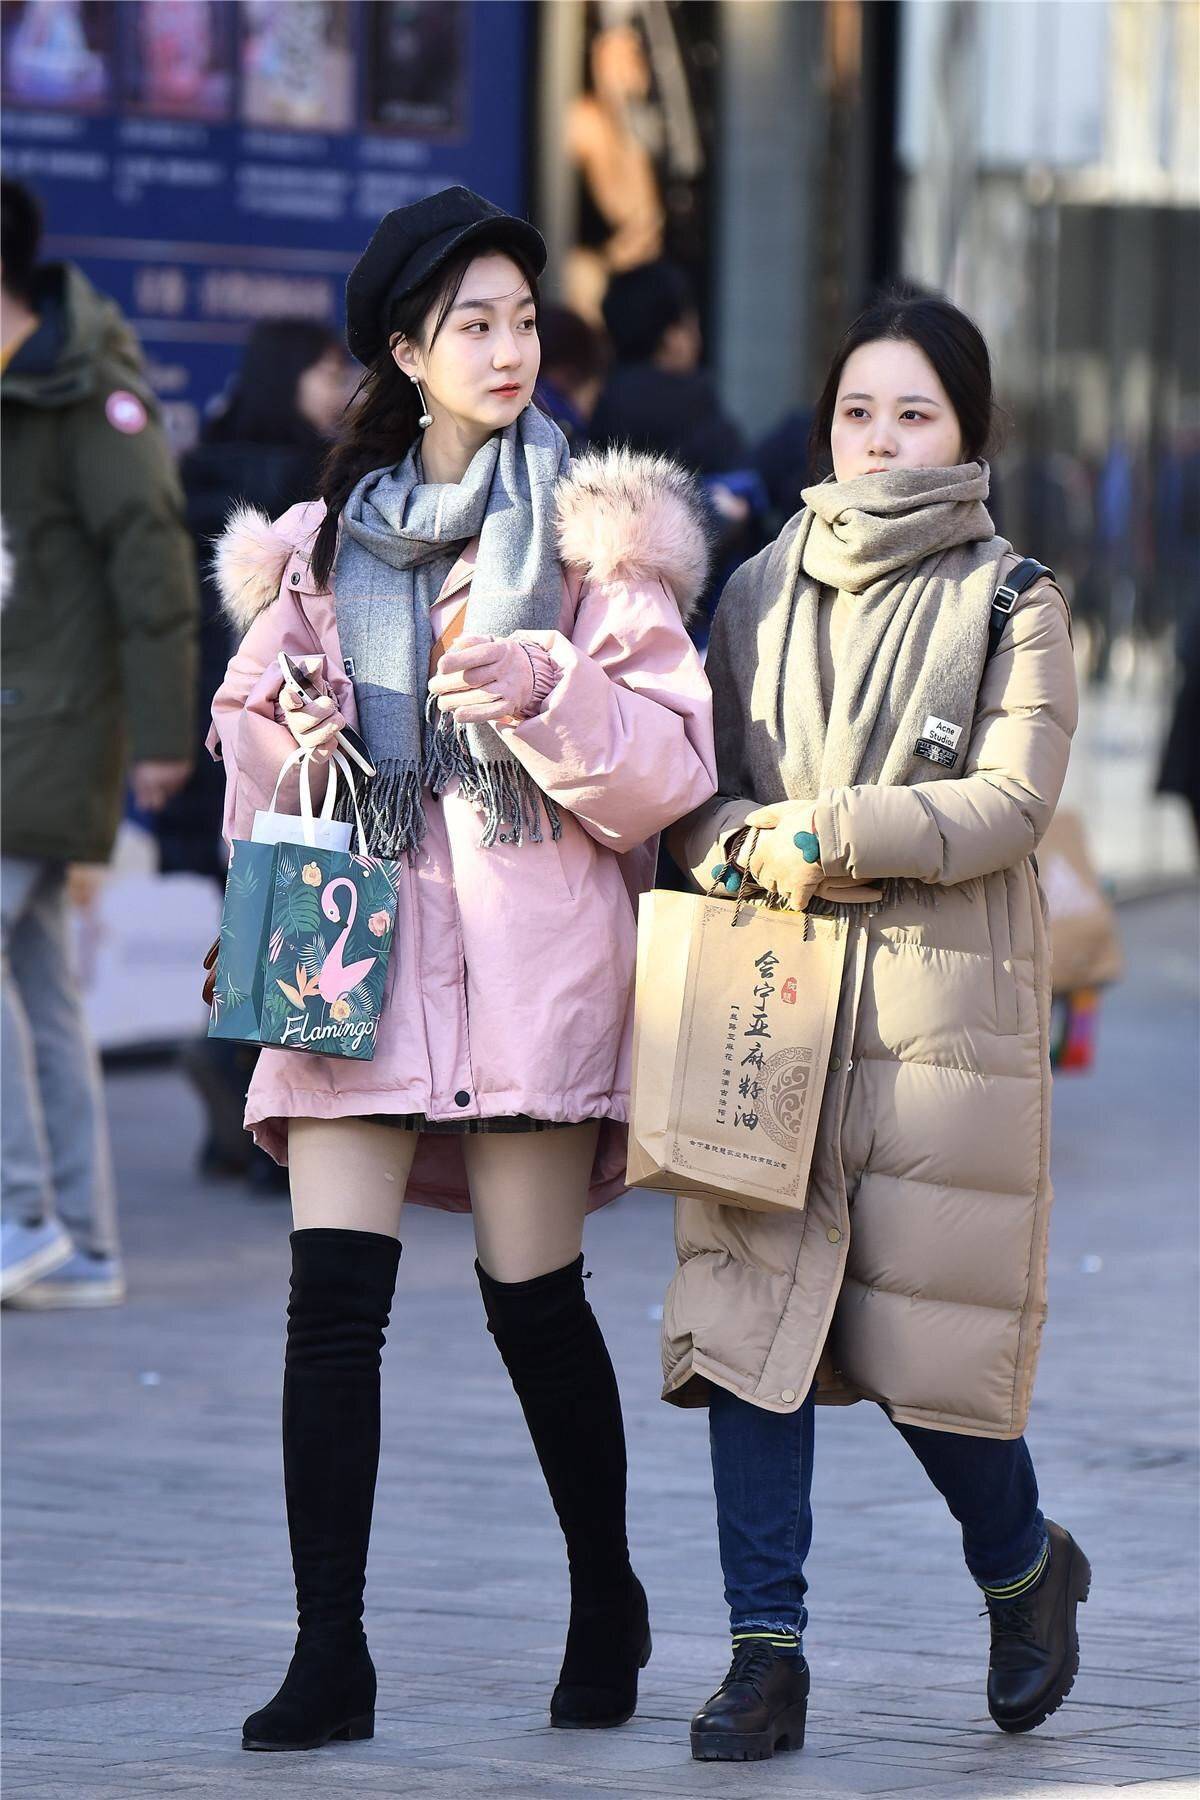 上海姑娘真不怕冷,大冬天还在玩下身失踪,为赶时髦确实很拼